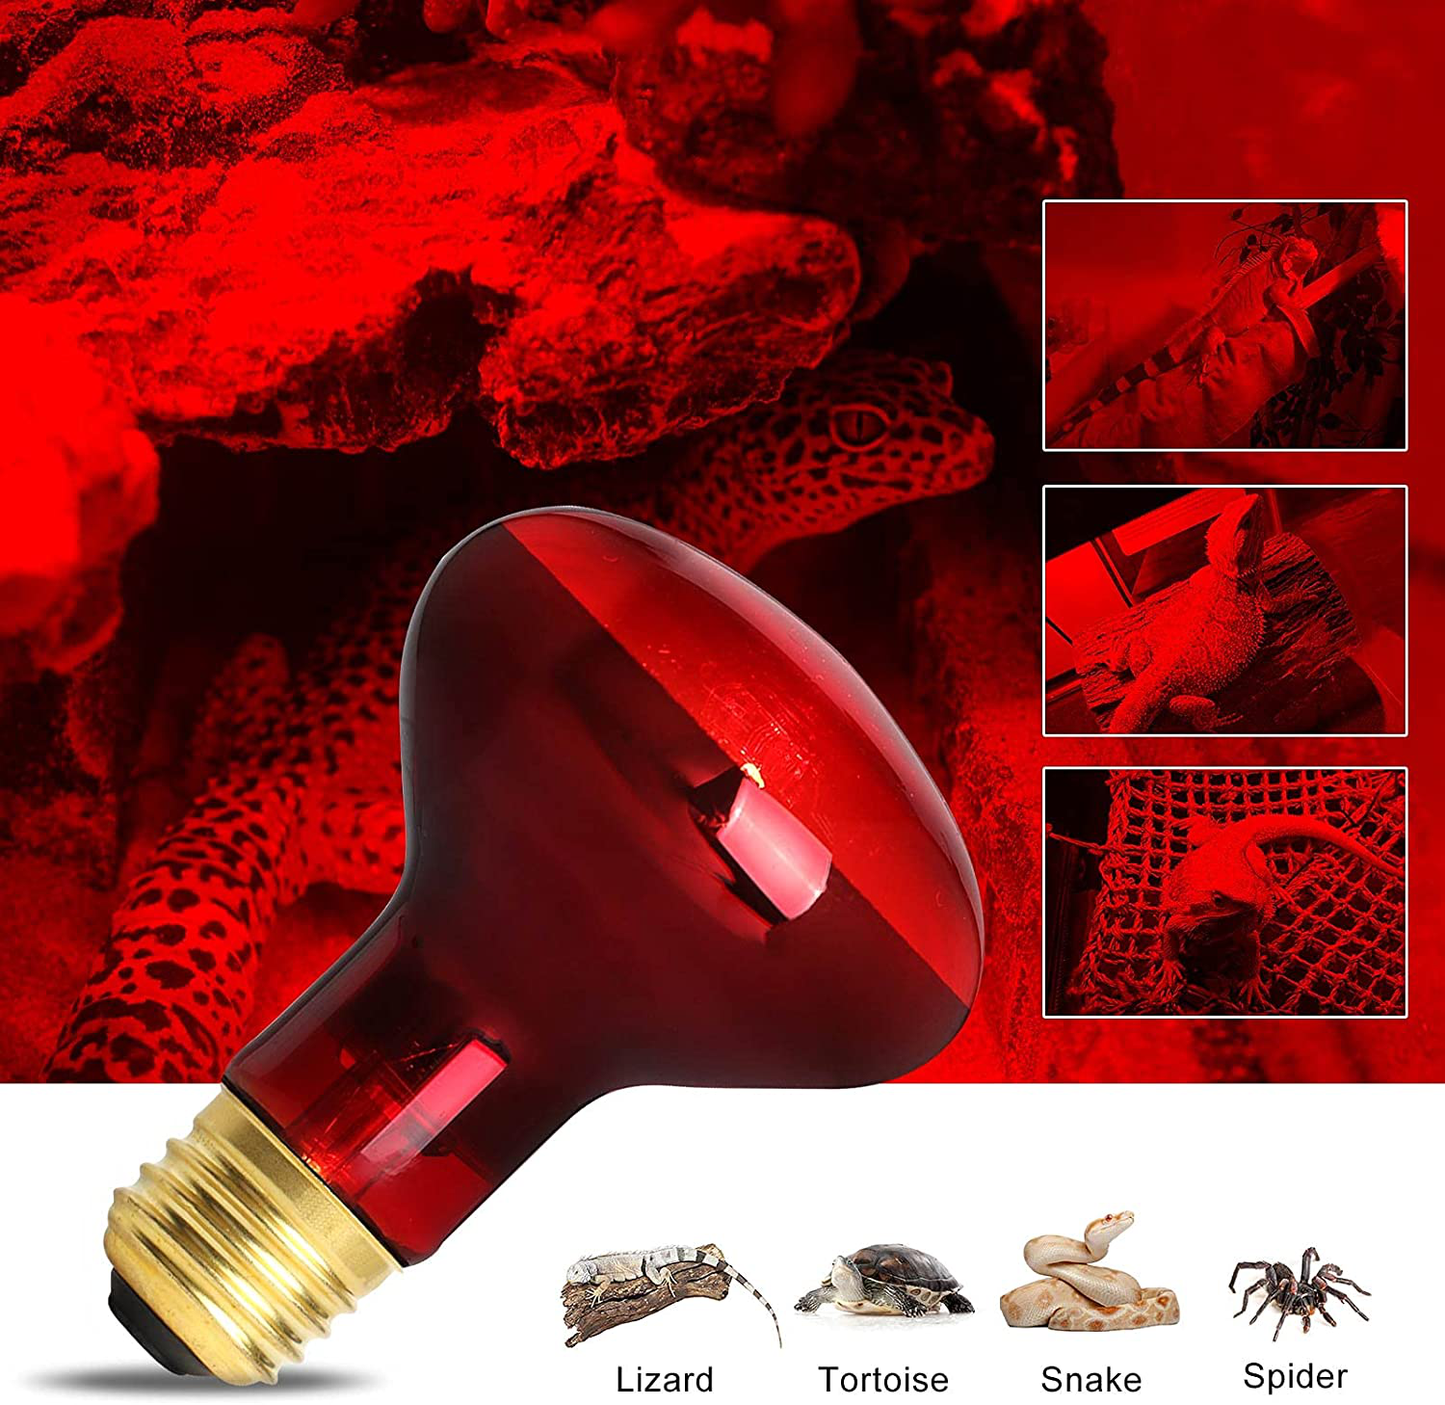 AOMRYOM 75W Infrared Basking Spot Heat Lamp Bulb Red Light Heat Bulbs for Pet Lizards Bearded Dragons Chameleons Snakes Reptiles & Amphibians - 2 Pack